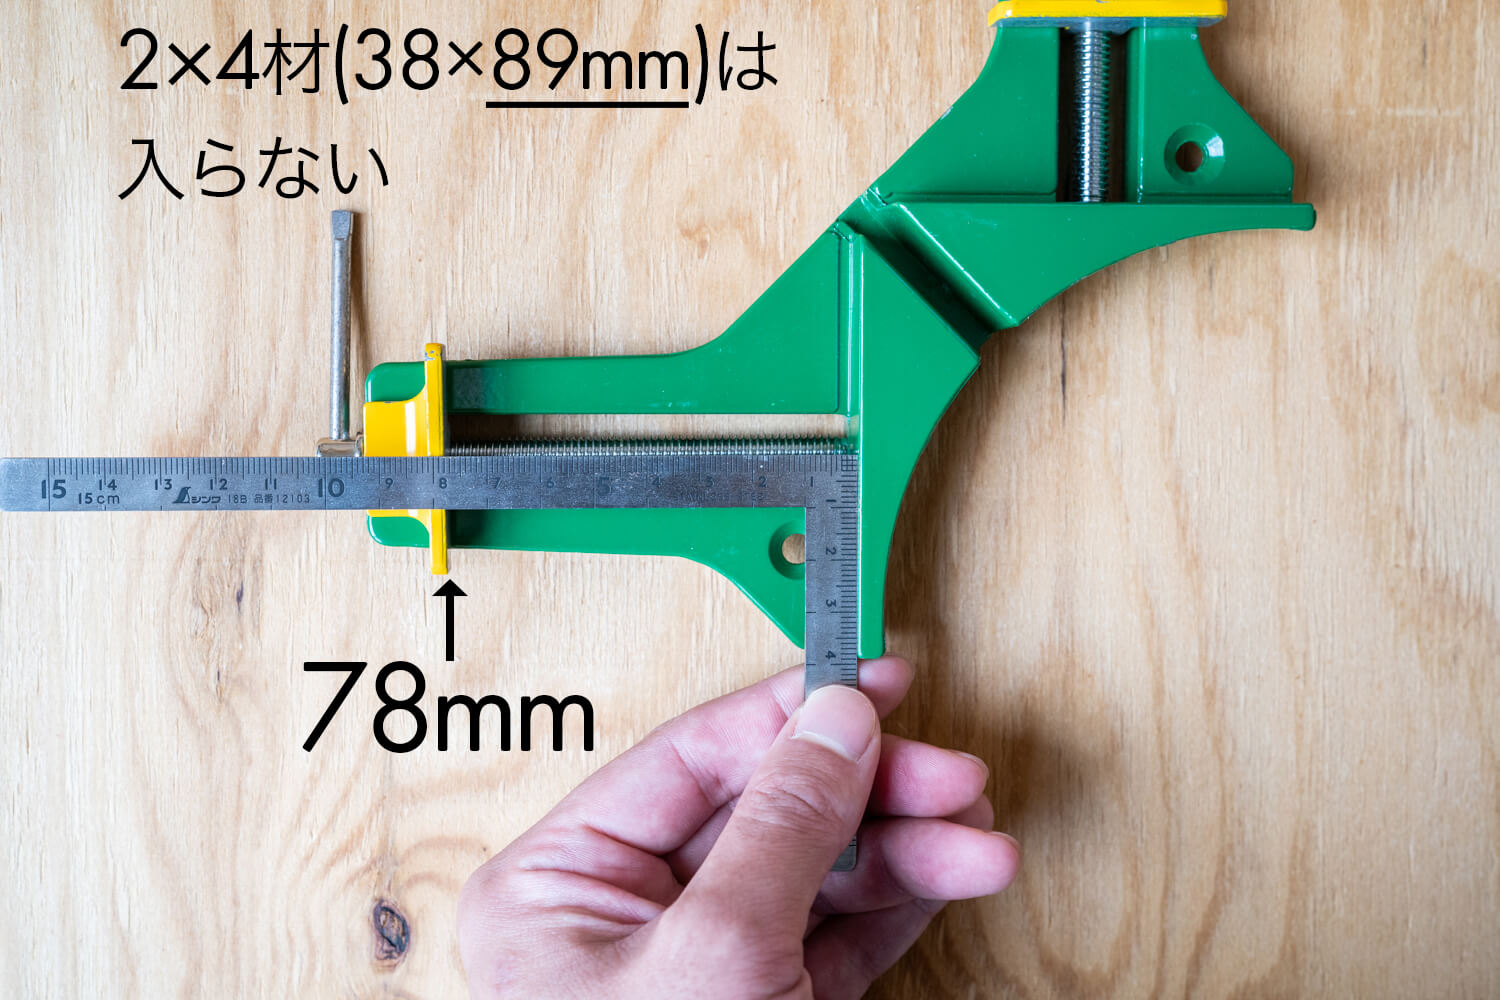 コーナークランプの使い方、木材の直角固定にDIYで便利なアイテム  99% DIY -DIYブログ-